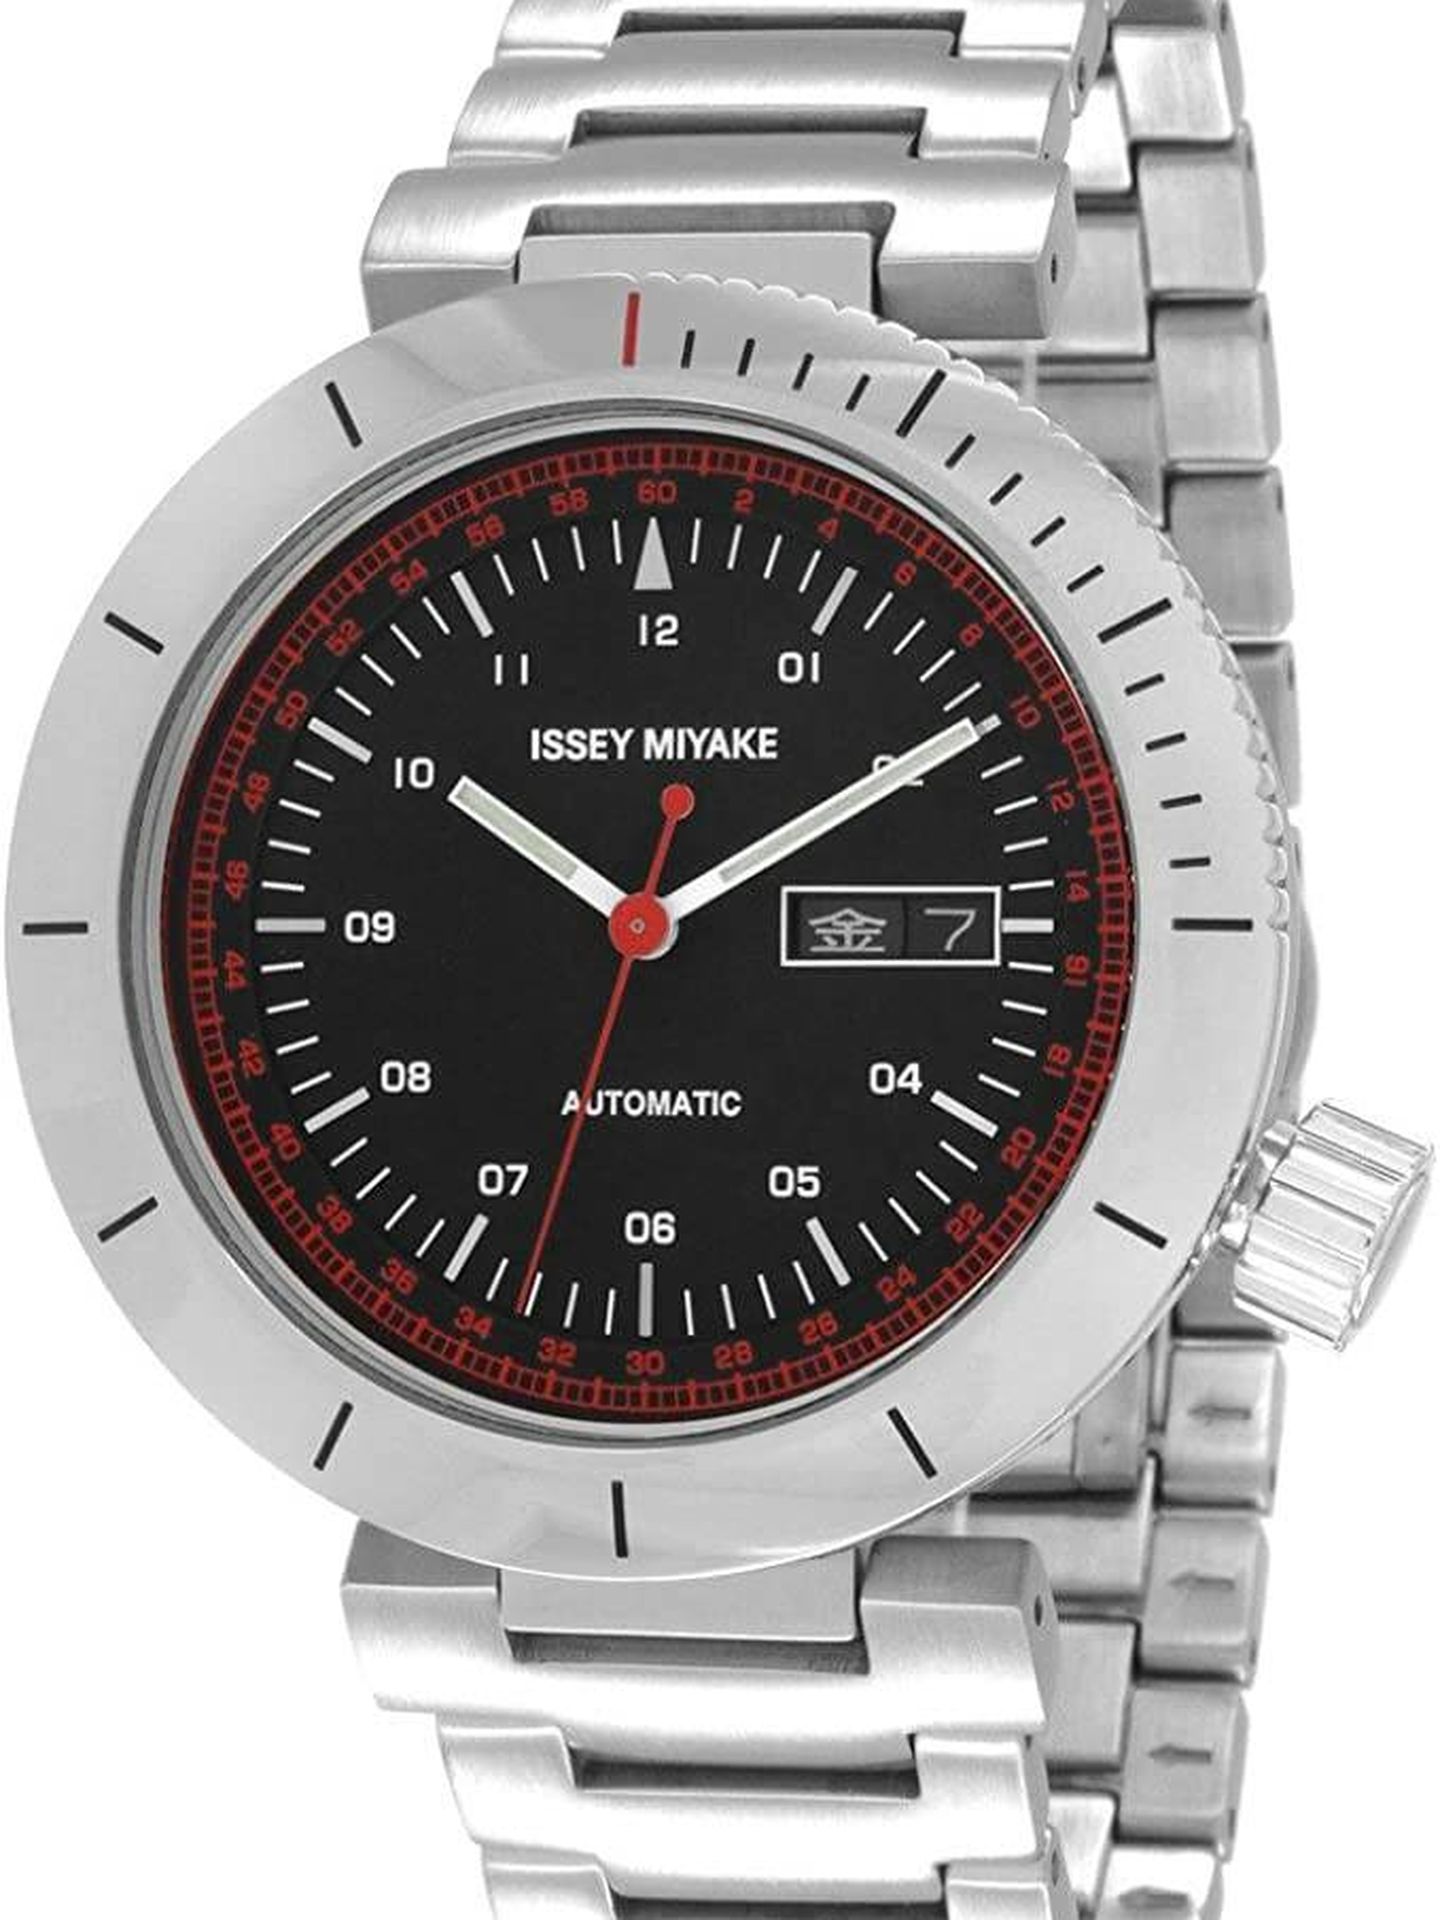 Reloj de la marca de Issey Miyake. (Amazon)